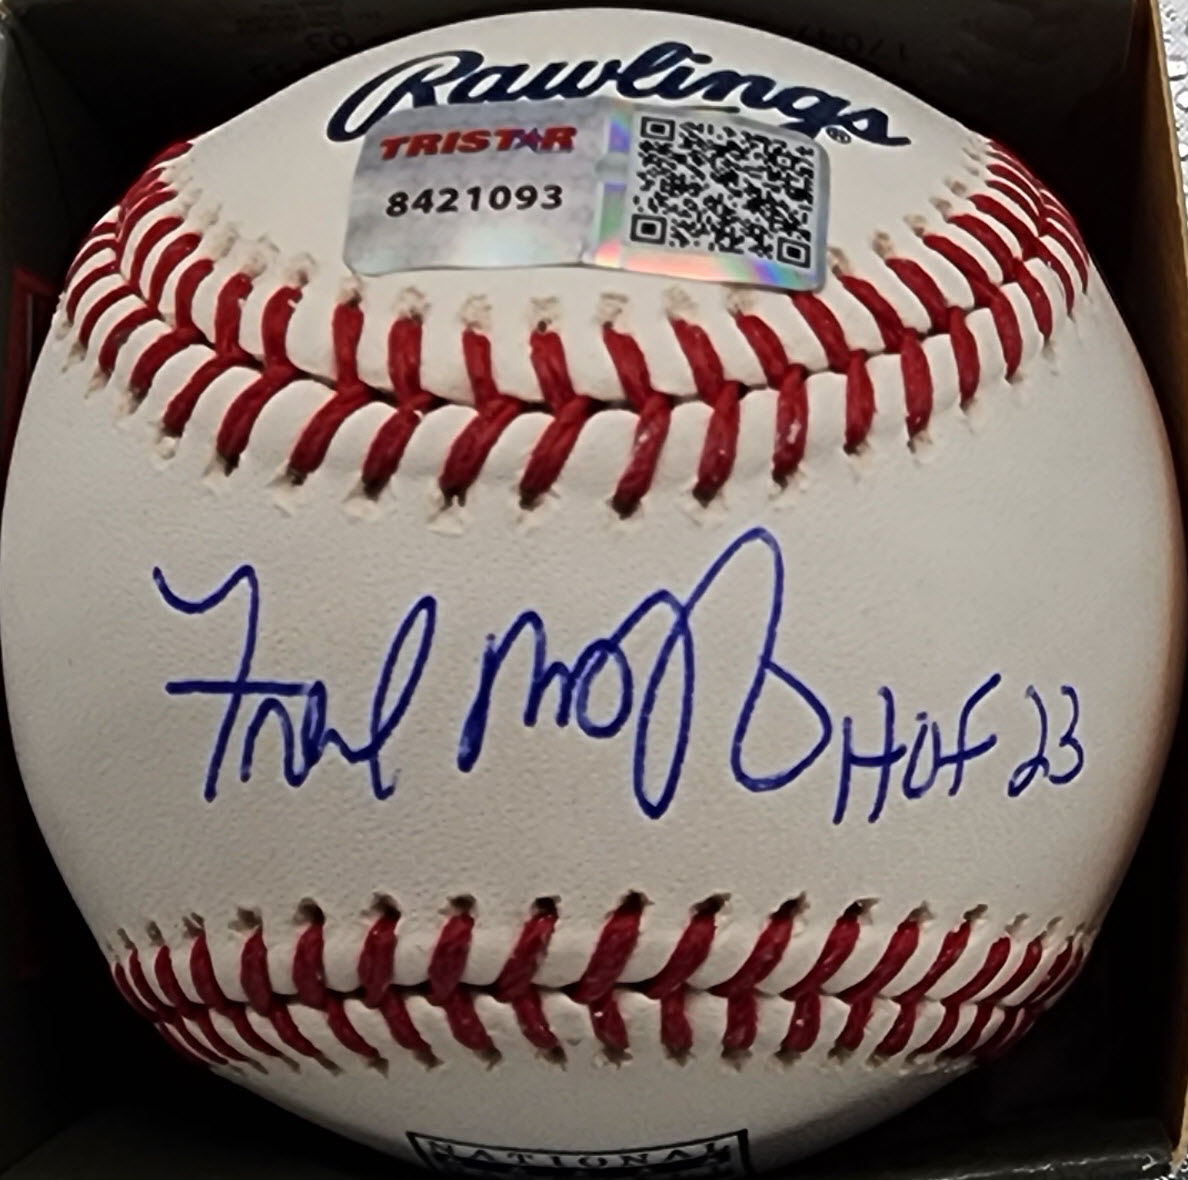 Fred McGriff Autographed HOF Baseball Sweet Spot Inscribed HOF 23 v1